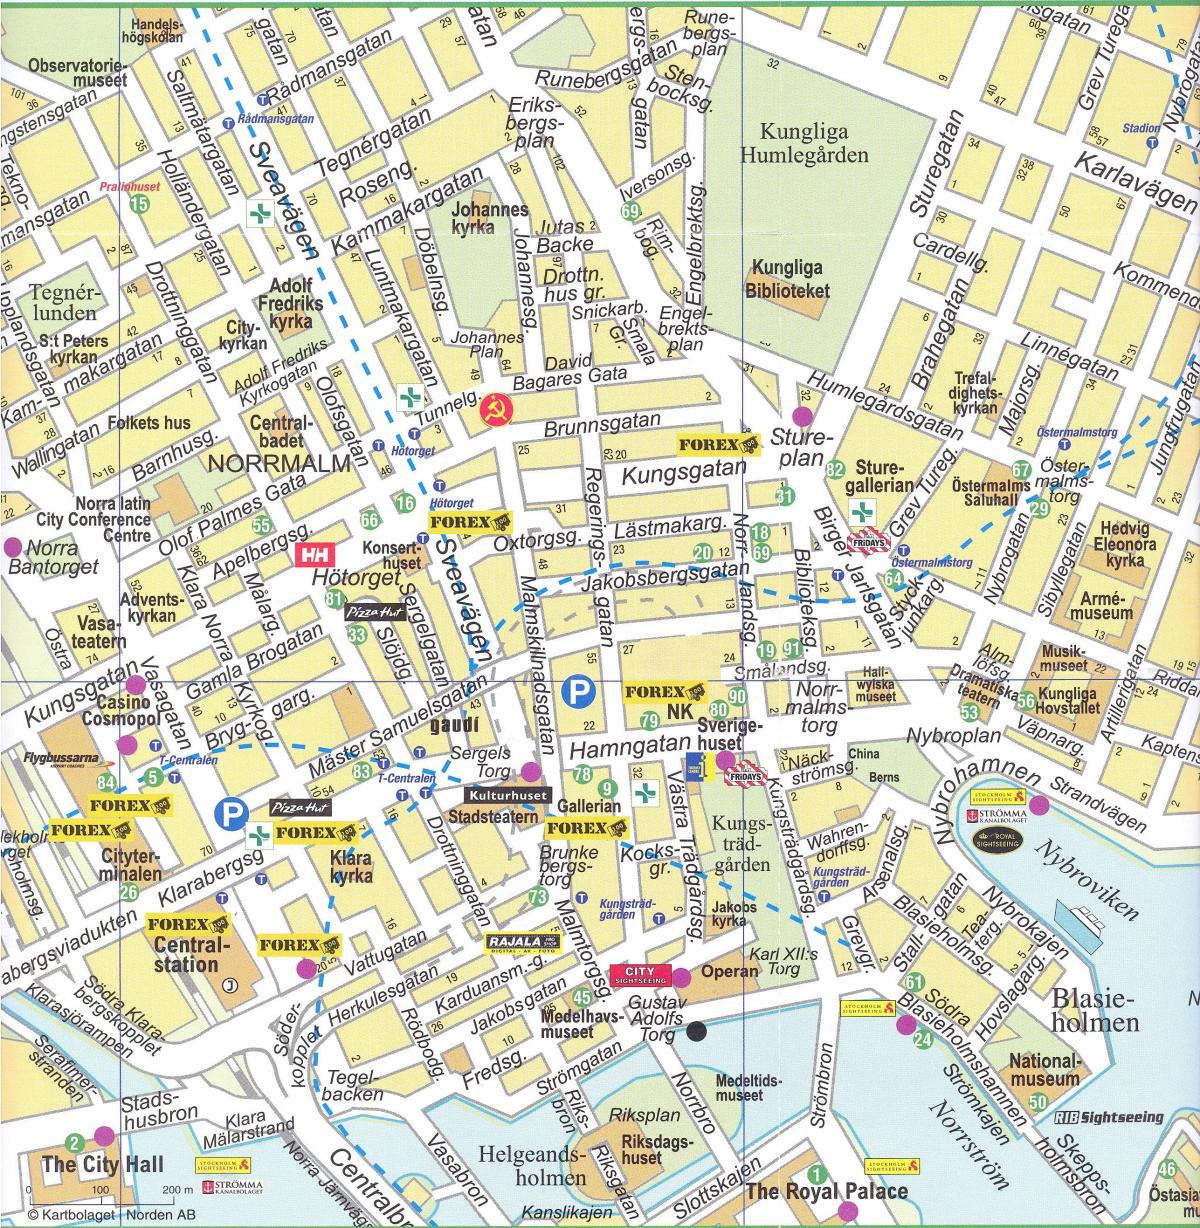 χάρτης της Στοκχόλμης στο κέντρο της πόλης